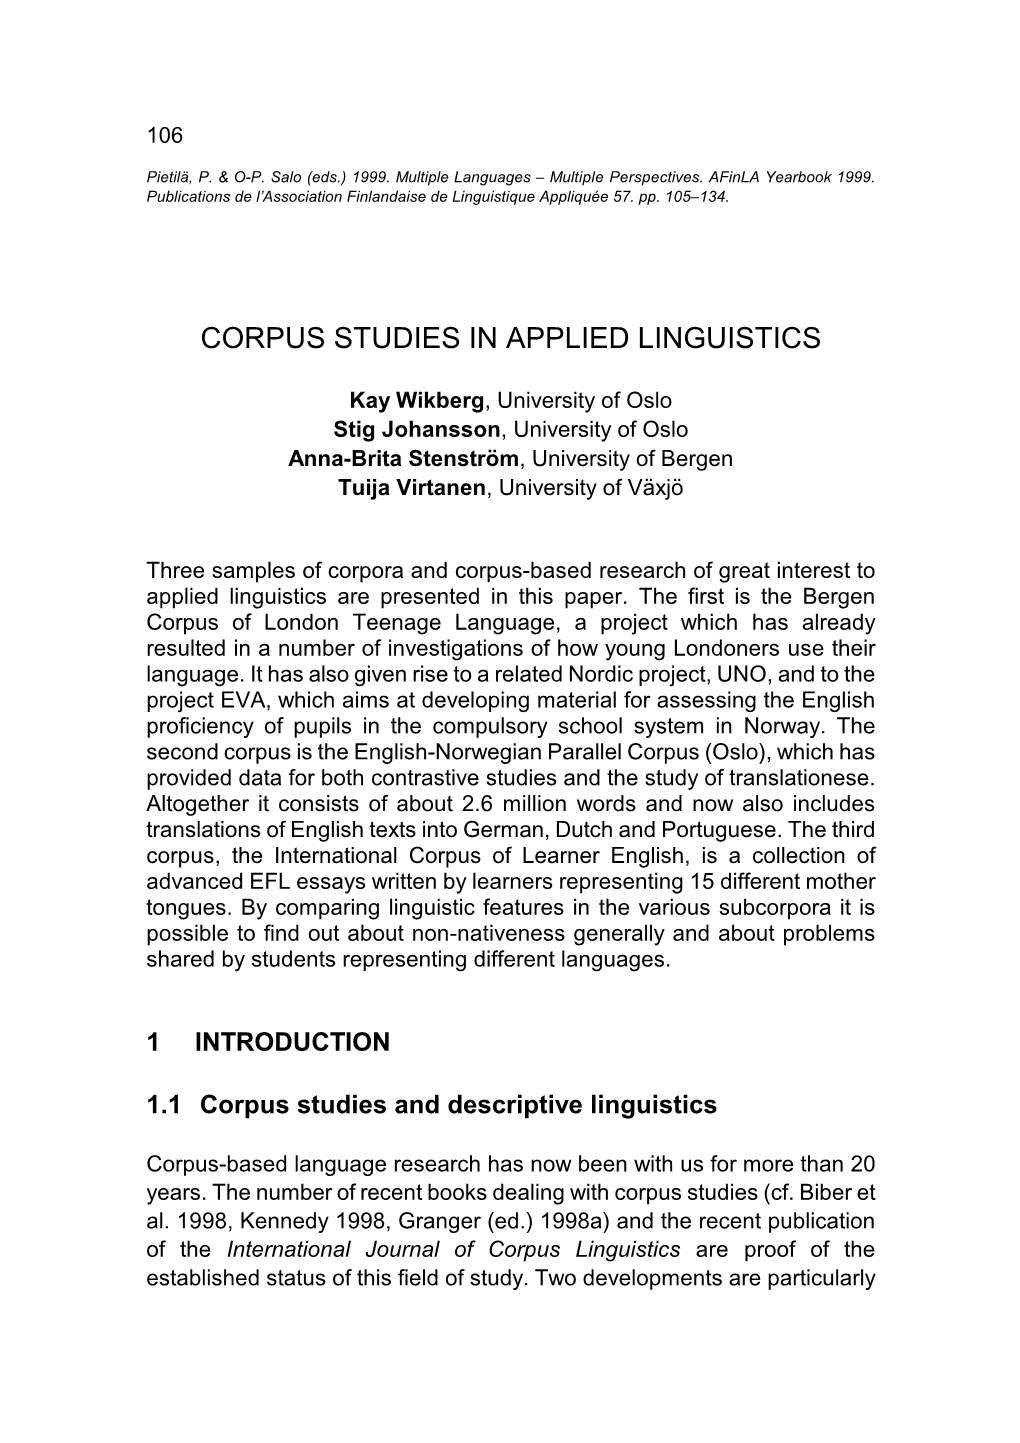 Corpus Studies in Applied Linguistics